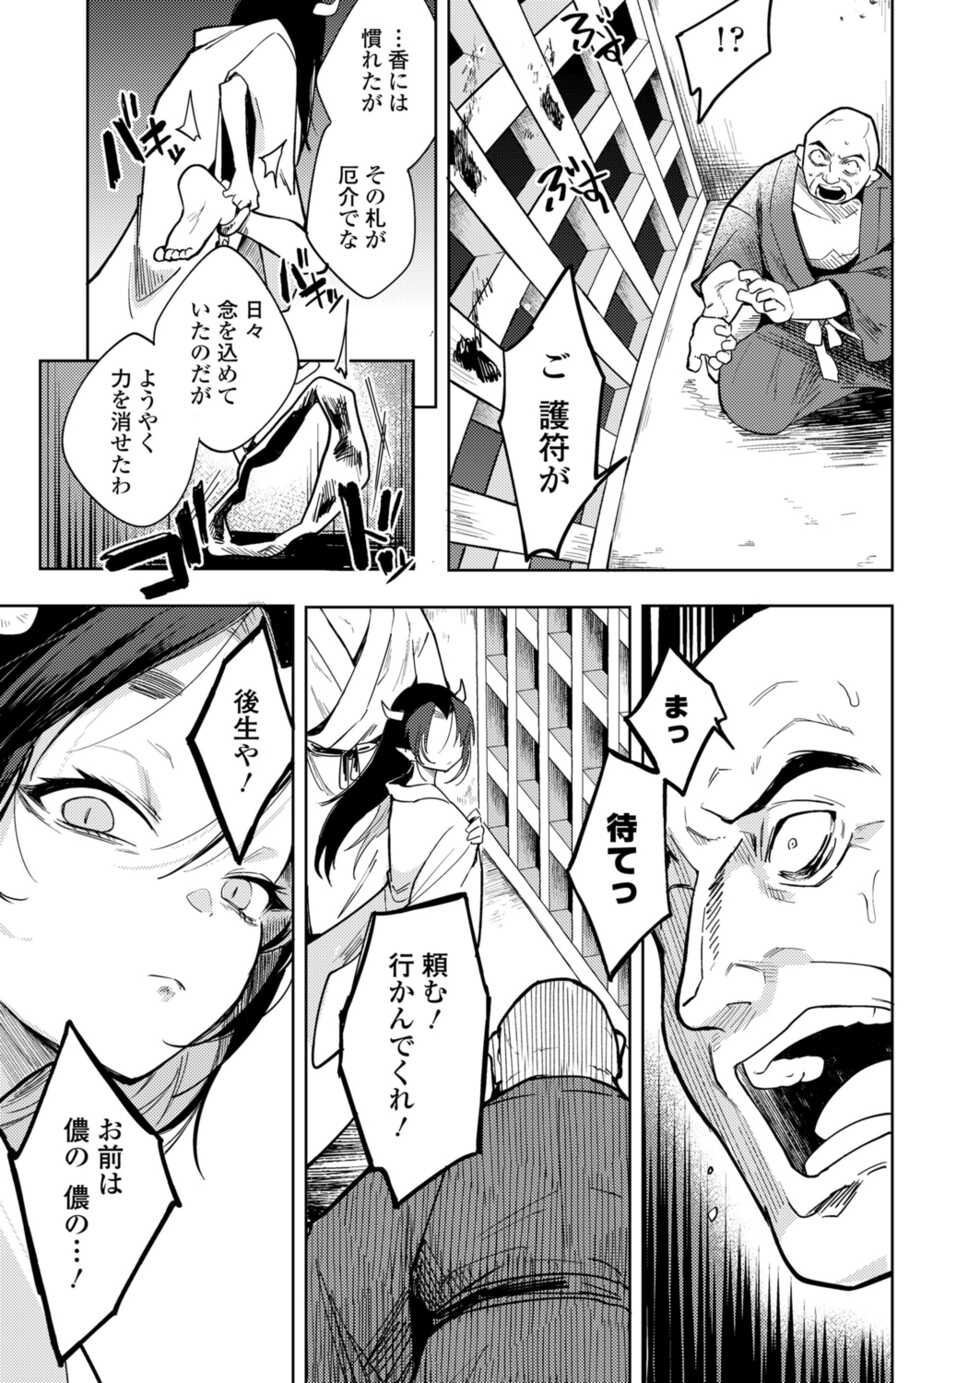 Towako 12 [Digital] - Page 31